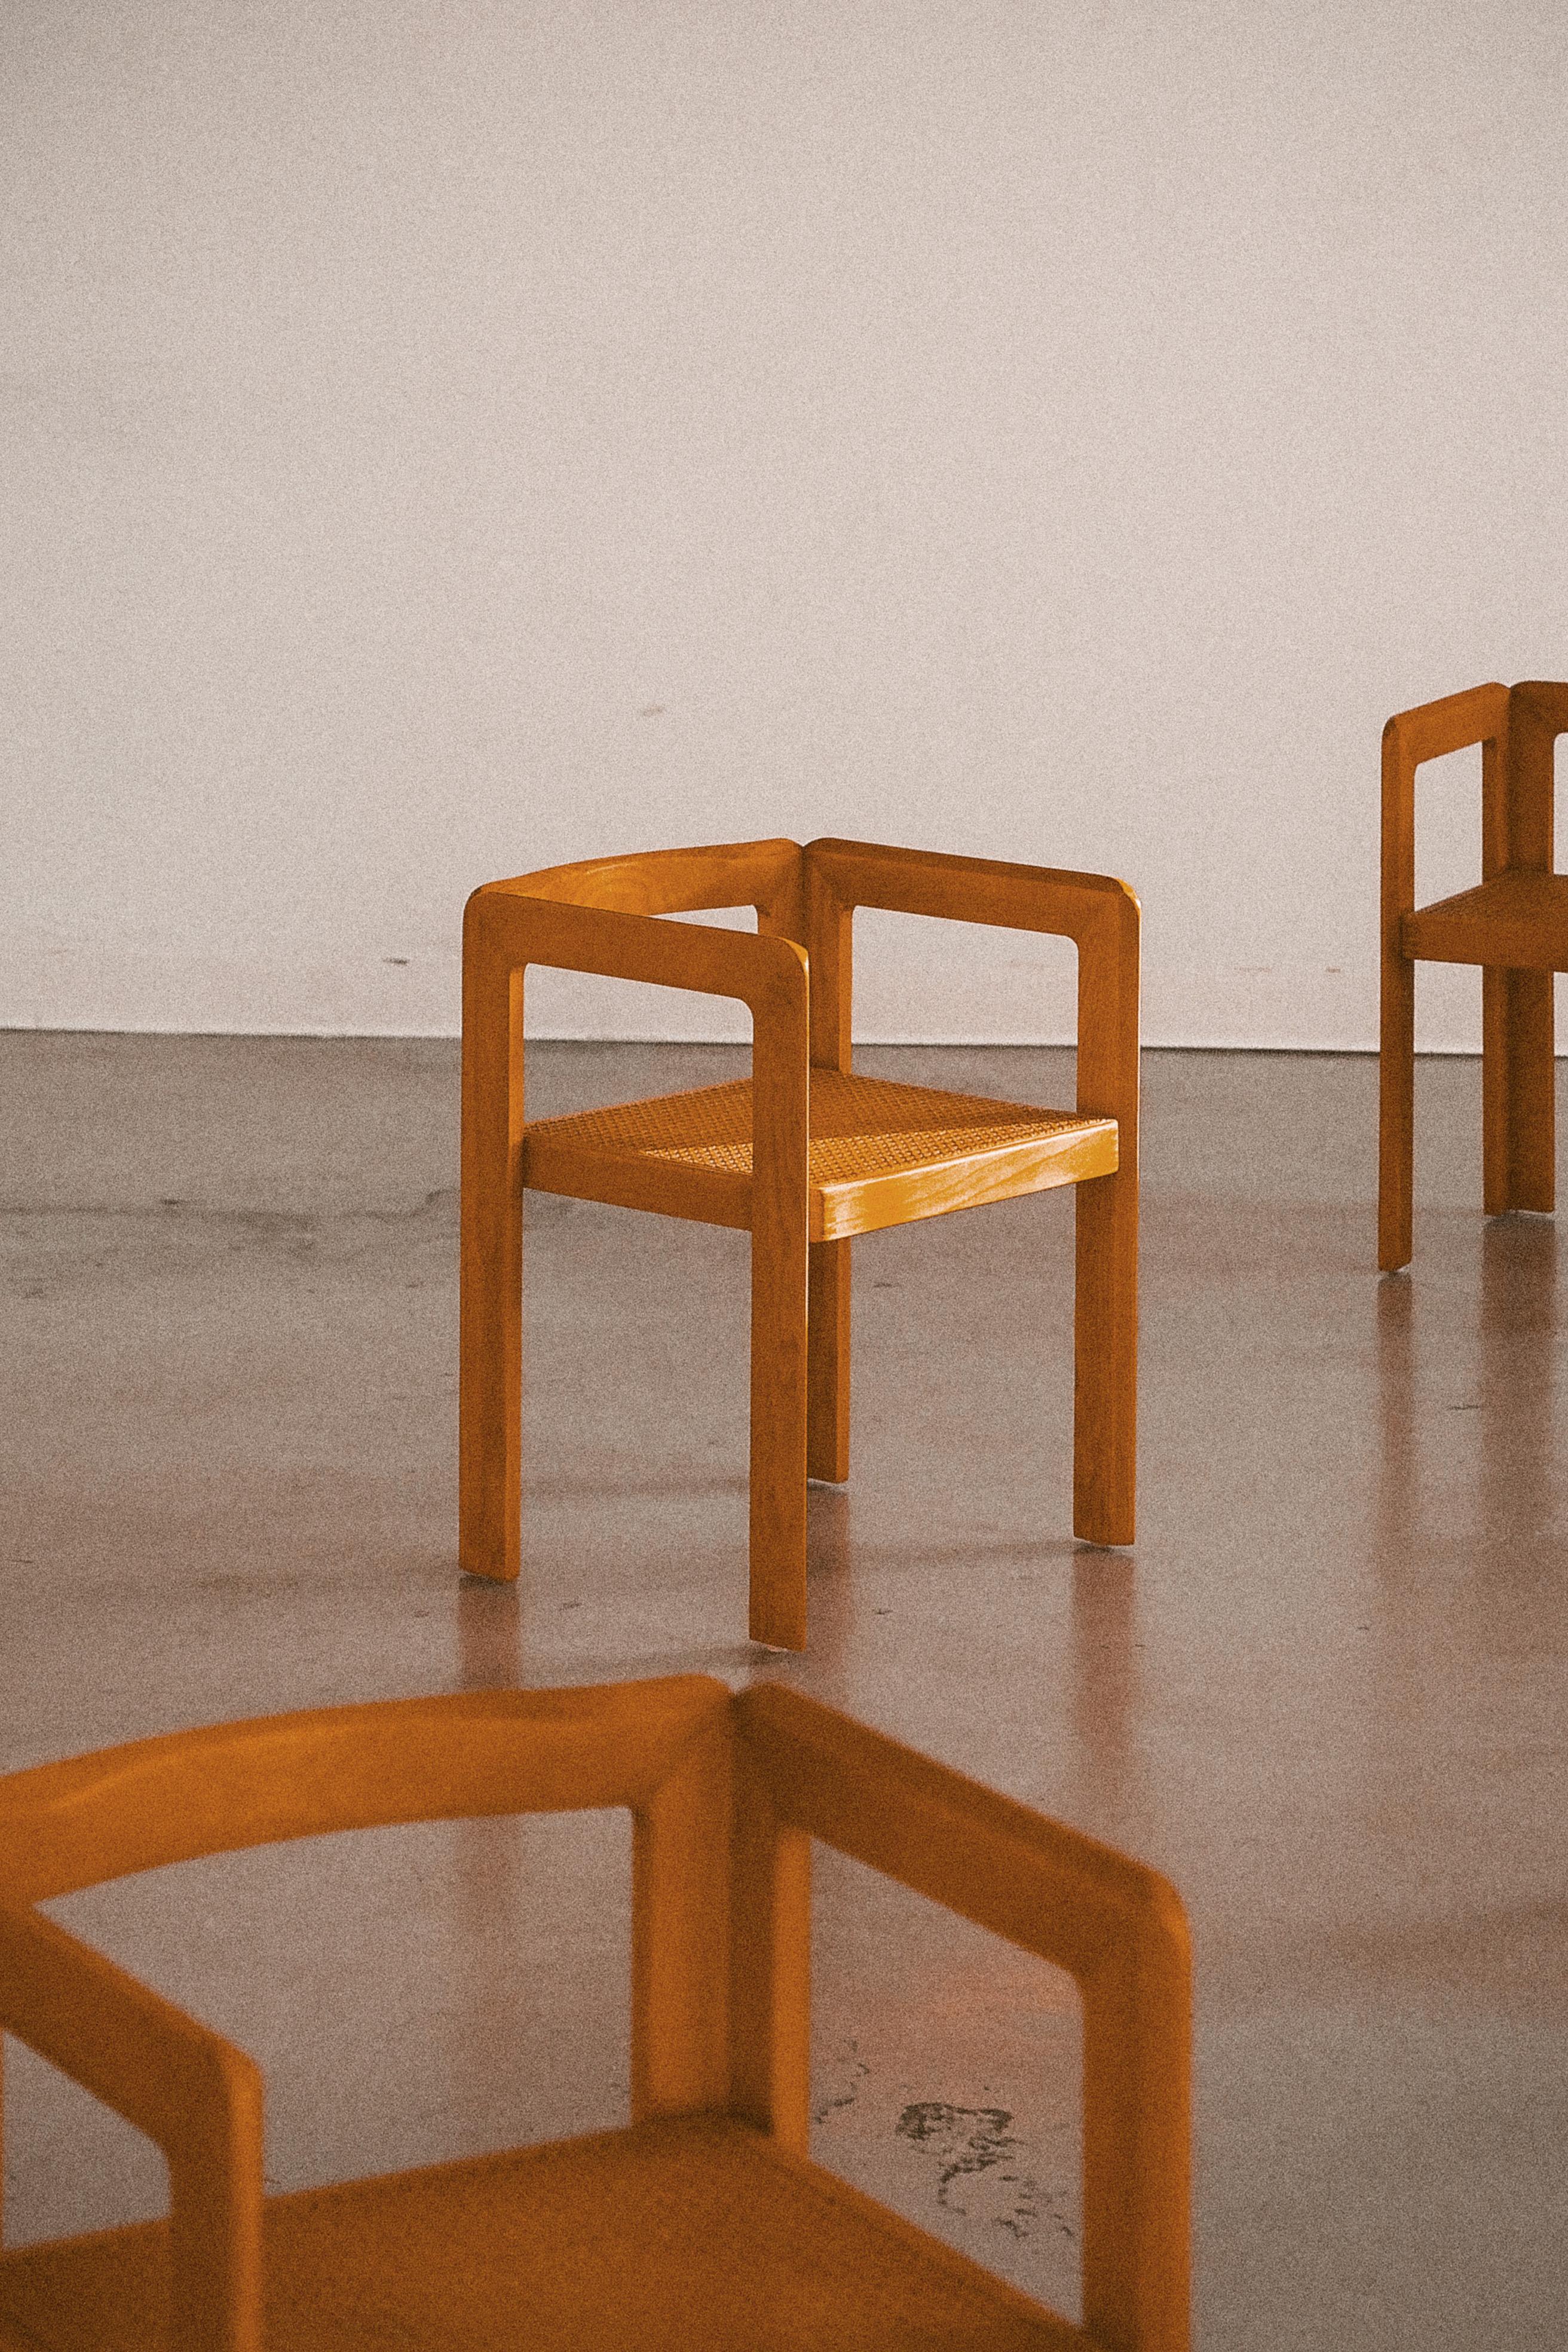 1980-1990 Produktion.

Großartiges und seltenes Exemplar eines großen Satzes von 10 zusammenpassenden Stühlen des belgisch-niederländischen Designers Derk Jan de Vries für seine Fir-Kollektion, die auch Schubladensets, Schränke, einen Schreibtisch